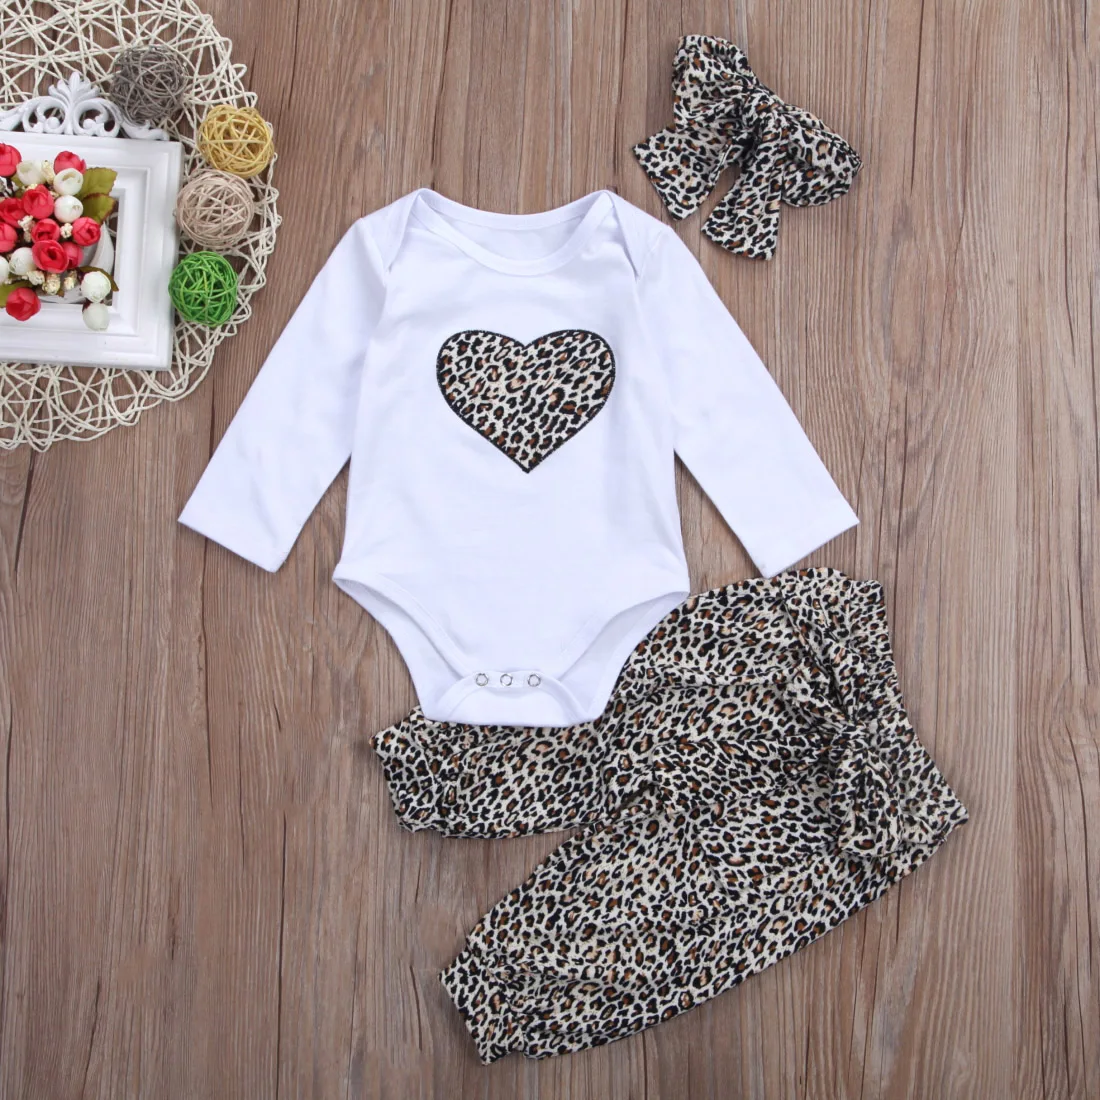 Одежда для маленьких девочек одежда с леопардовым принтом для новорожденных девочек боди с длинными рукавами и сердечками, брюки с бантиком, повязка на голову, комплект из 3 предметов